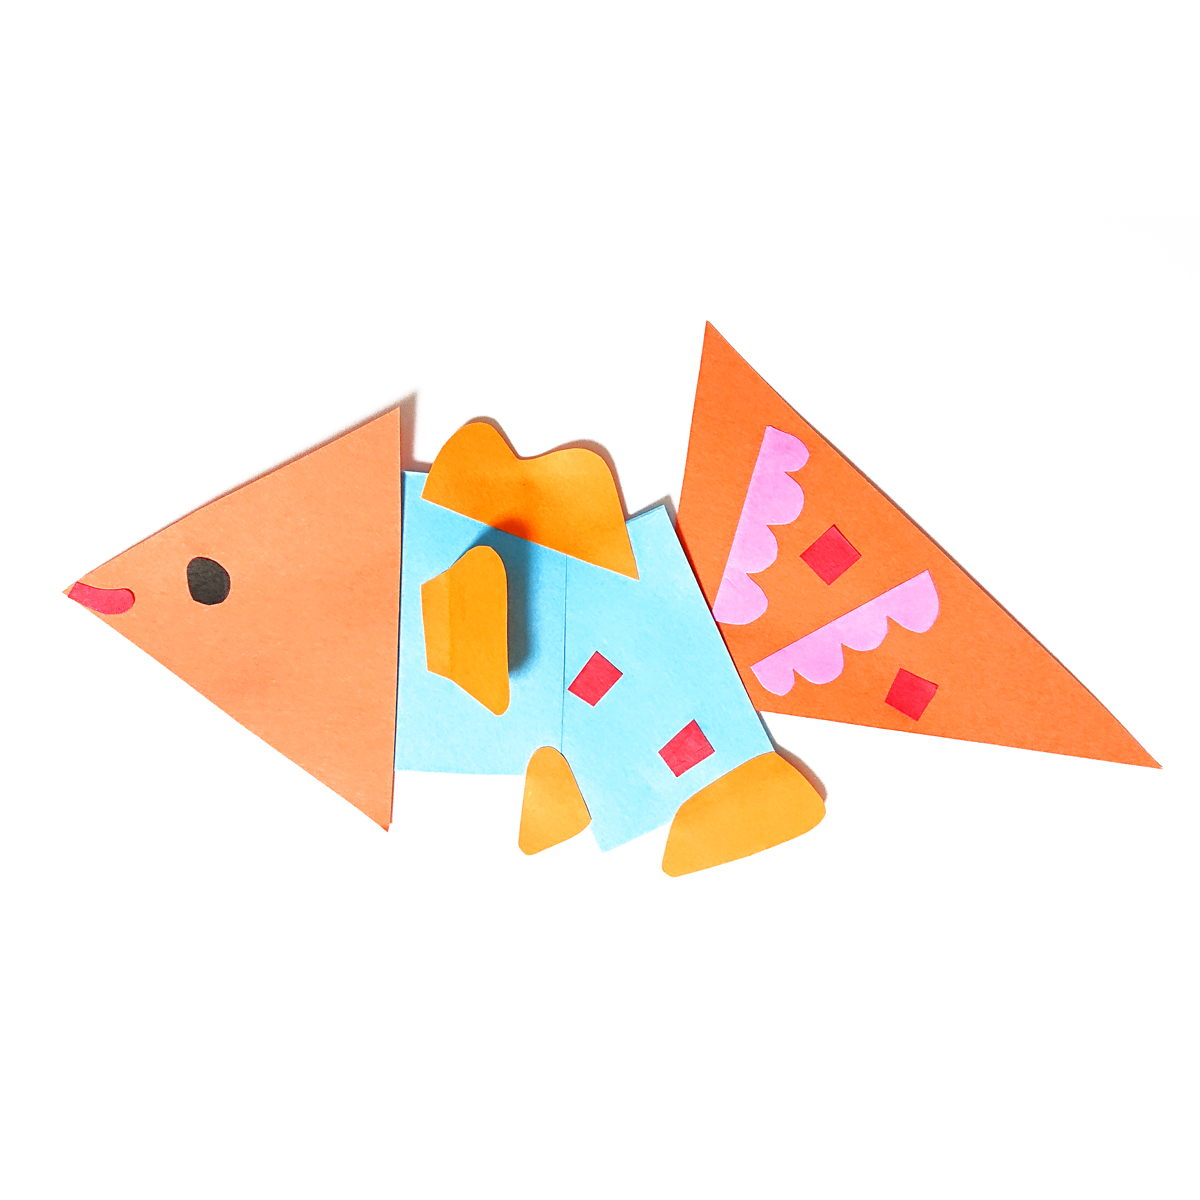 早稲田実業学校初等部向け小学校受験工作対策カリキュラム50分の参考作品「四角・三角・丸の形を変身しよう」